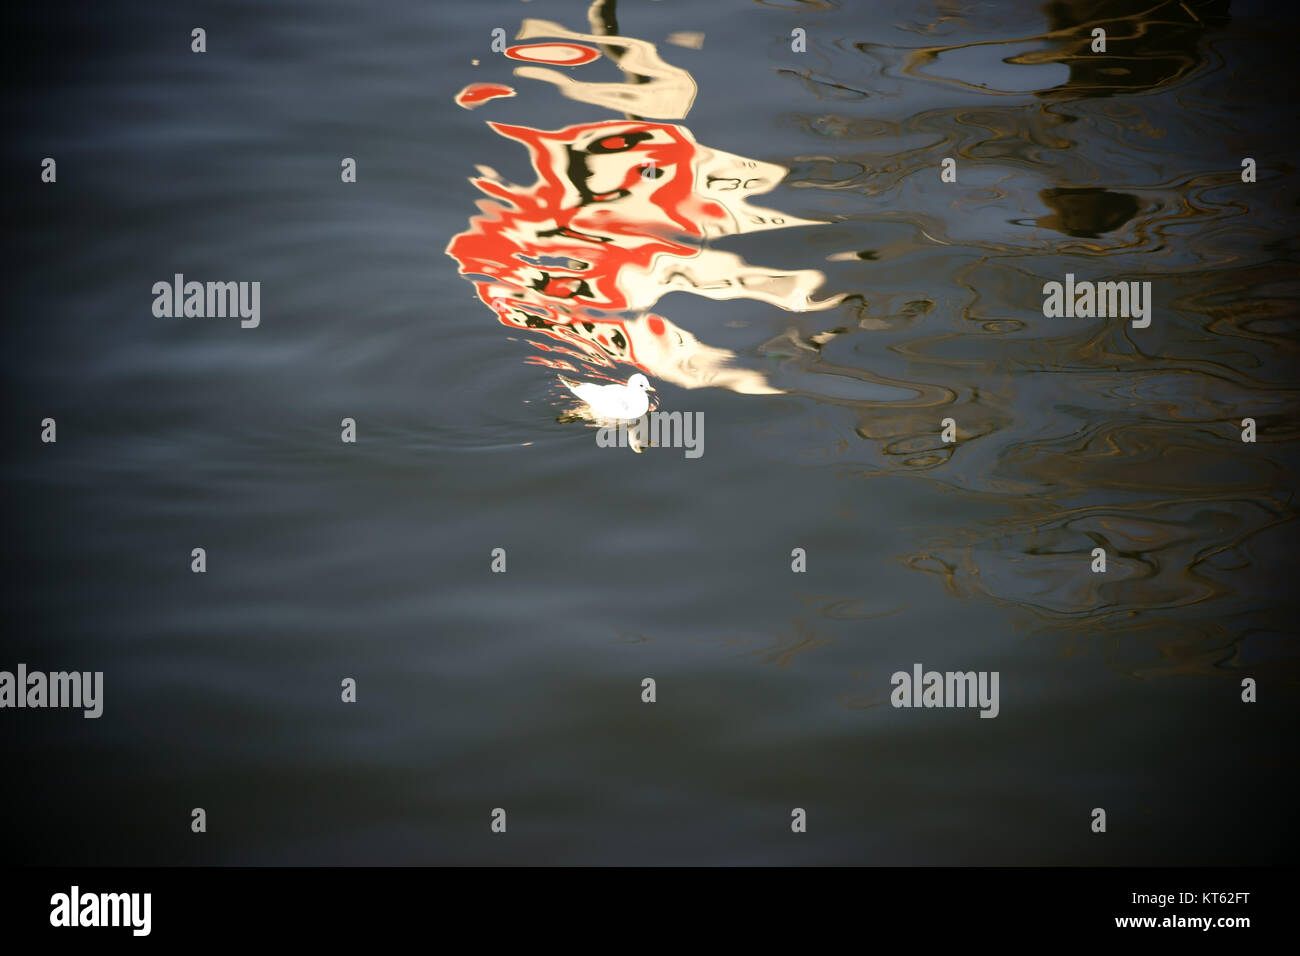 Die verzerrte Spiegelung eines Verkehrsschildes auf der Wasseroberfläche durch die eine Möwe schwimmt. Stock Photo